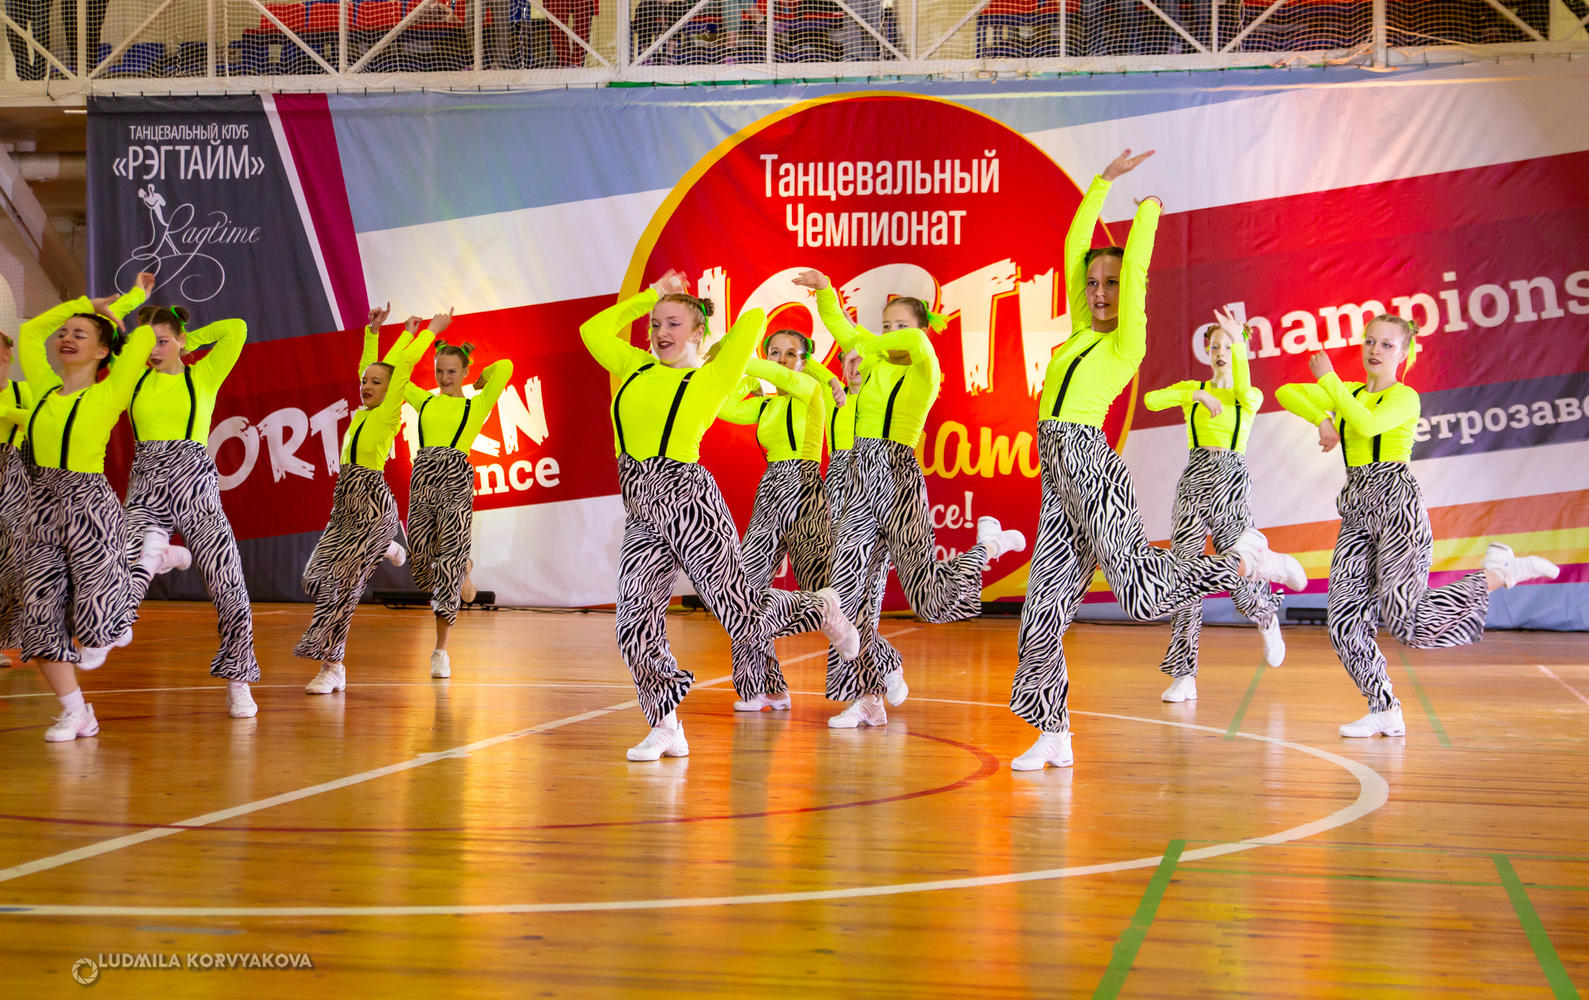 Яркие улыбки и движения участников танцевального чемпионата в Карелии впечатляют